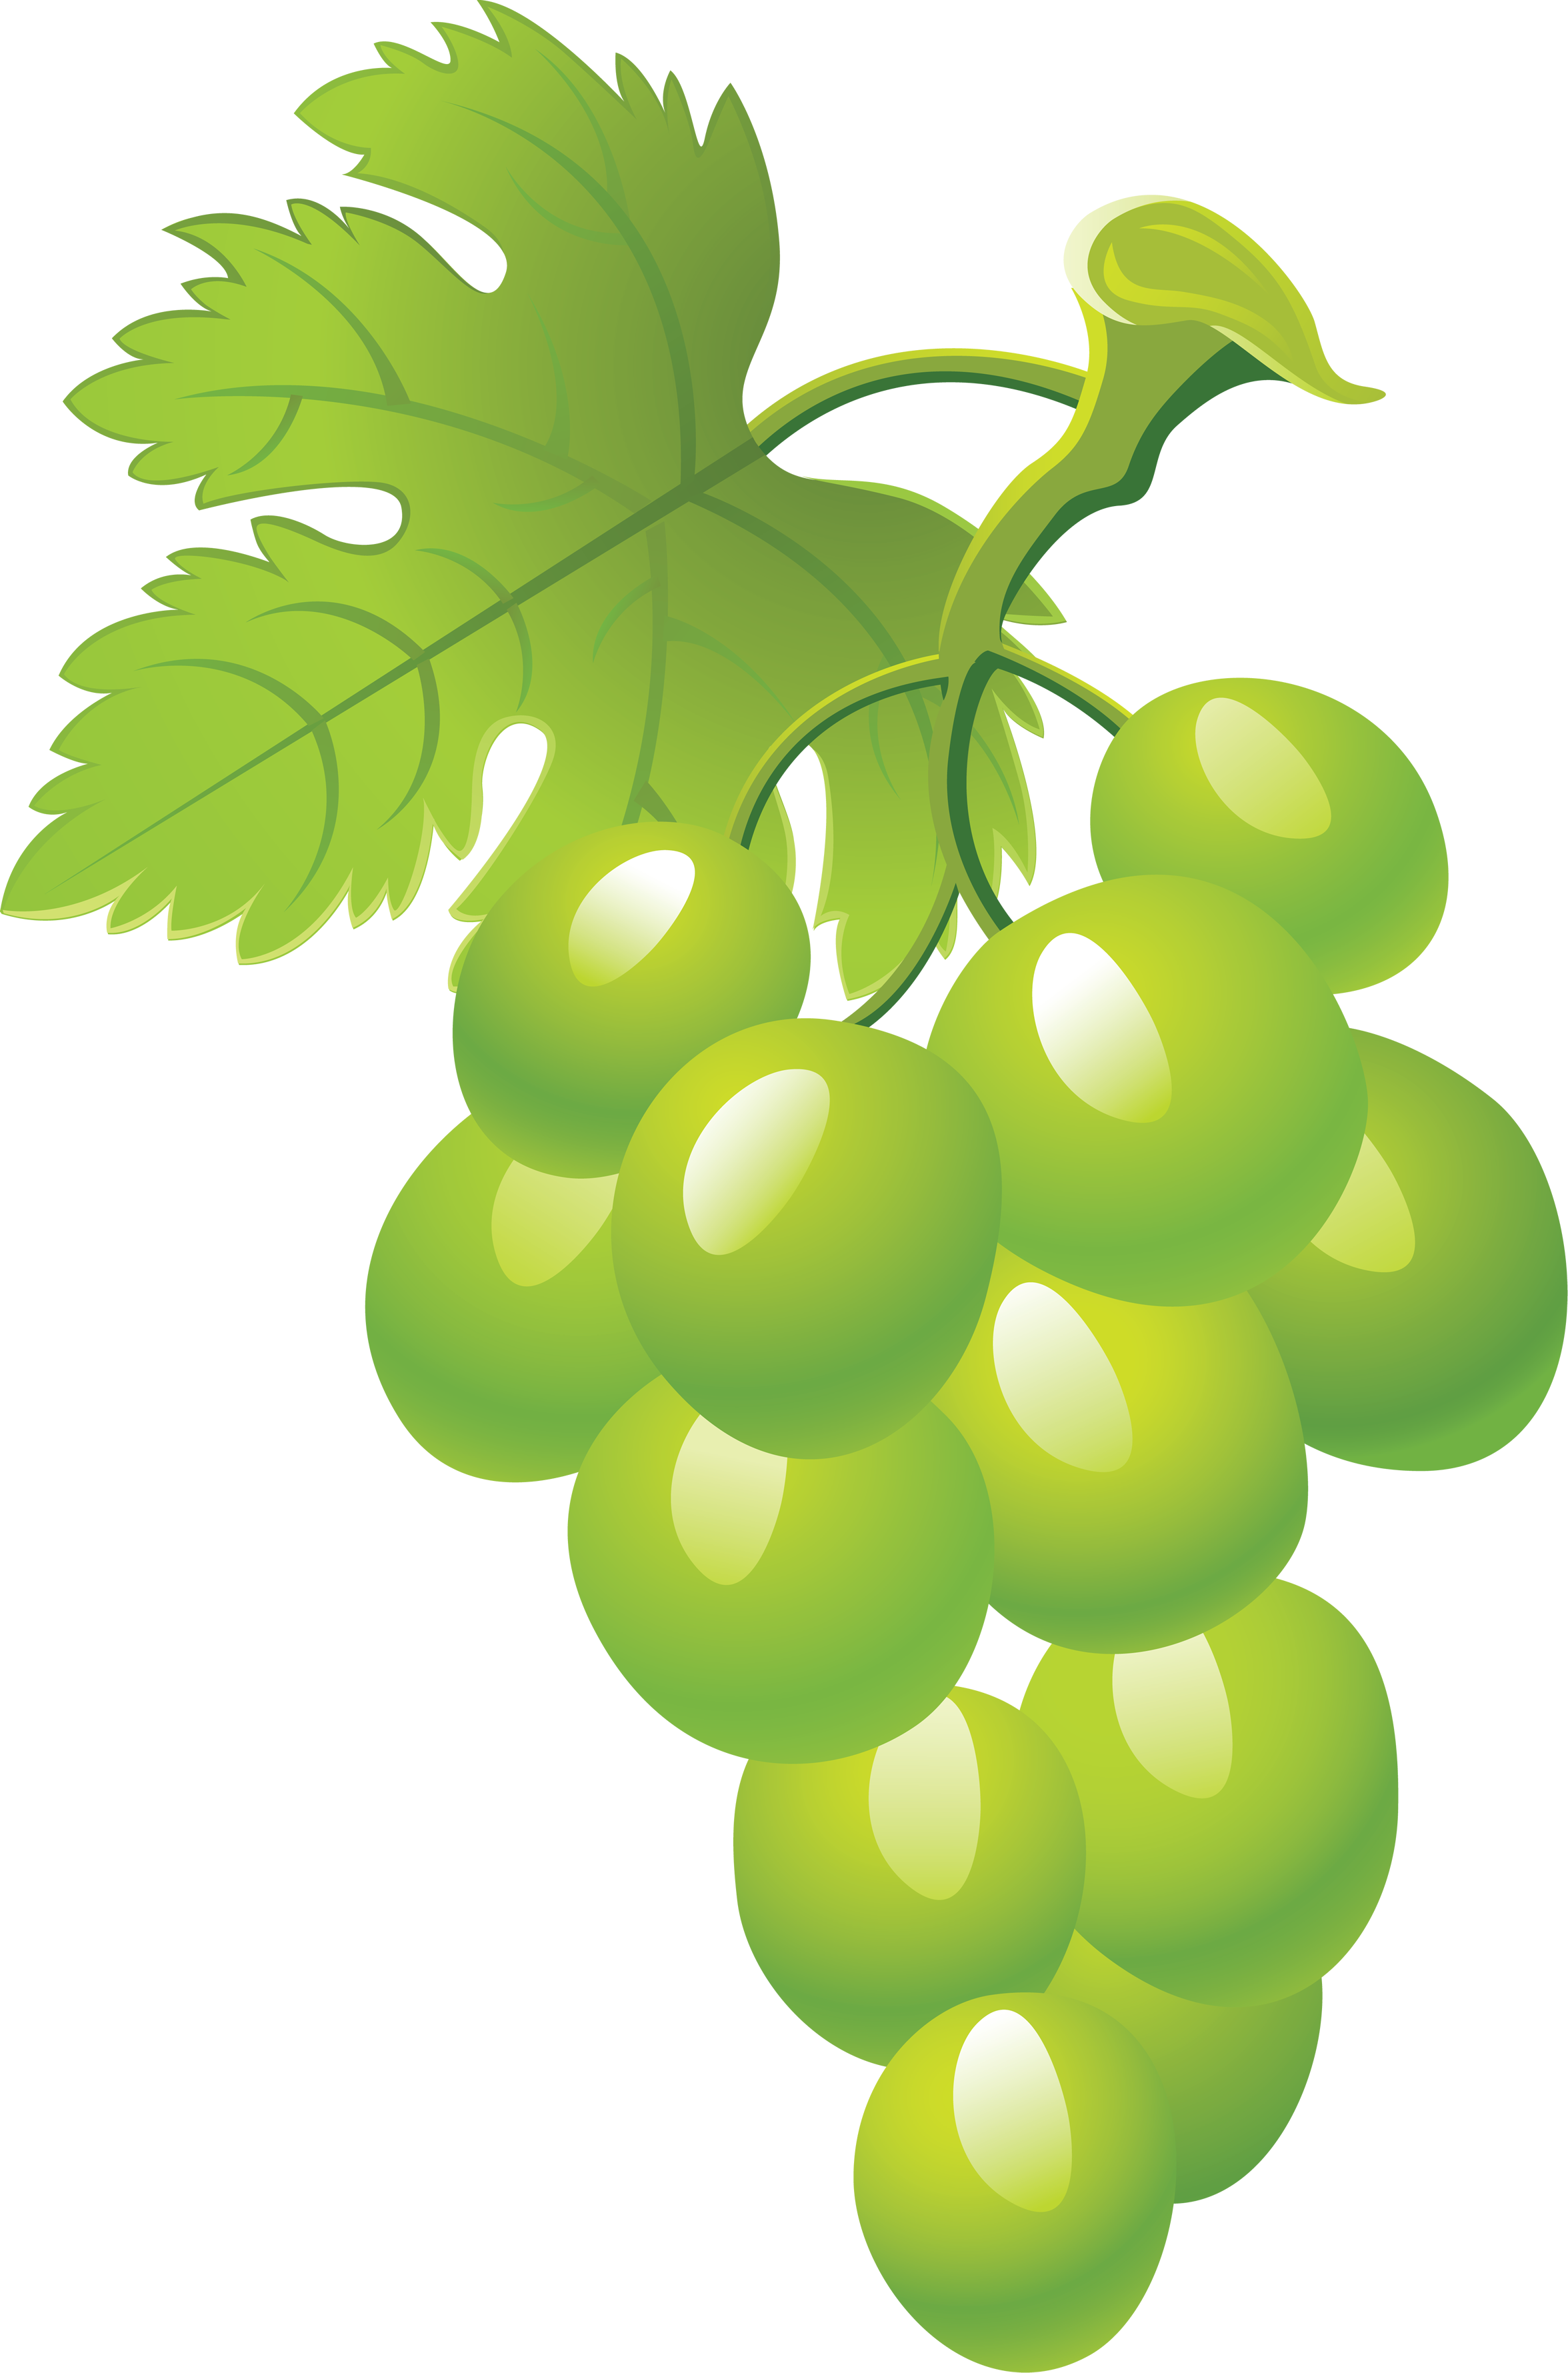 Fotos de uvas verdes